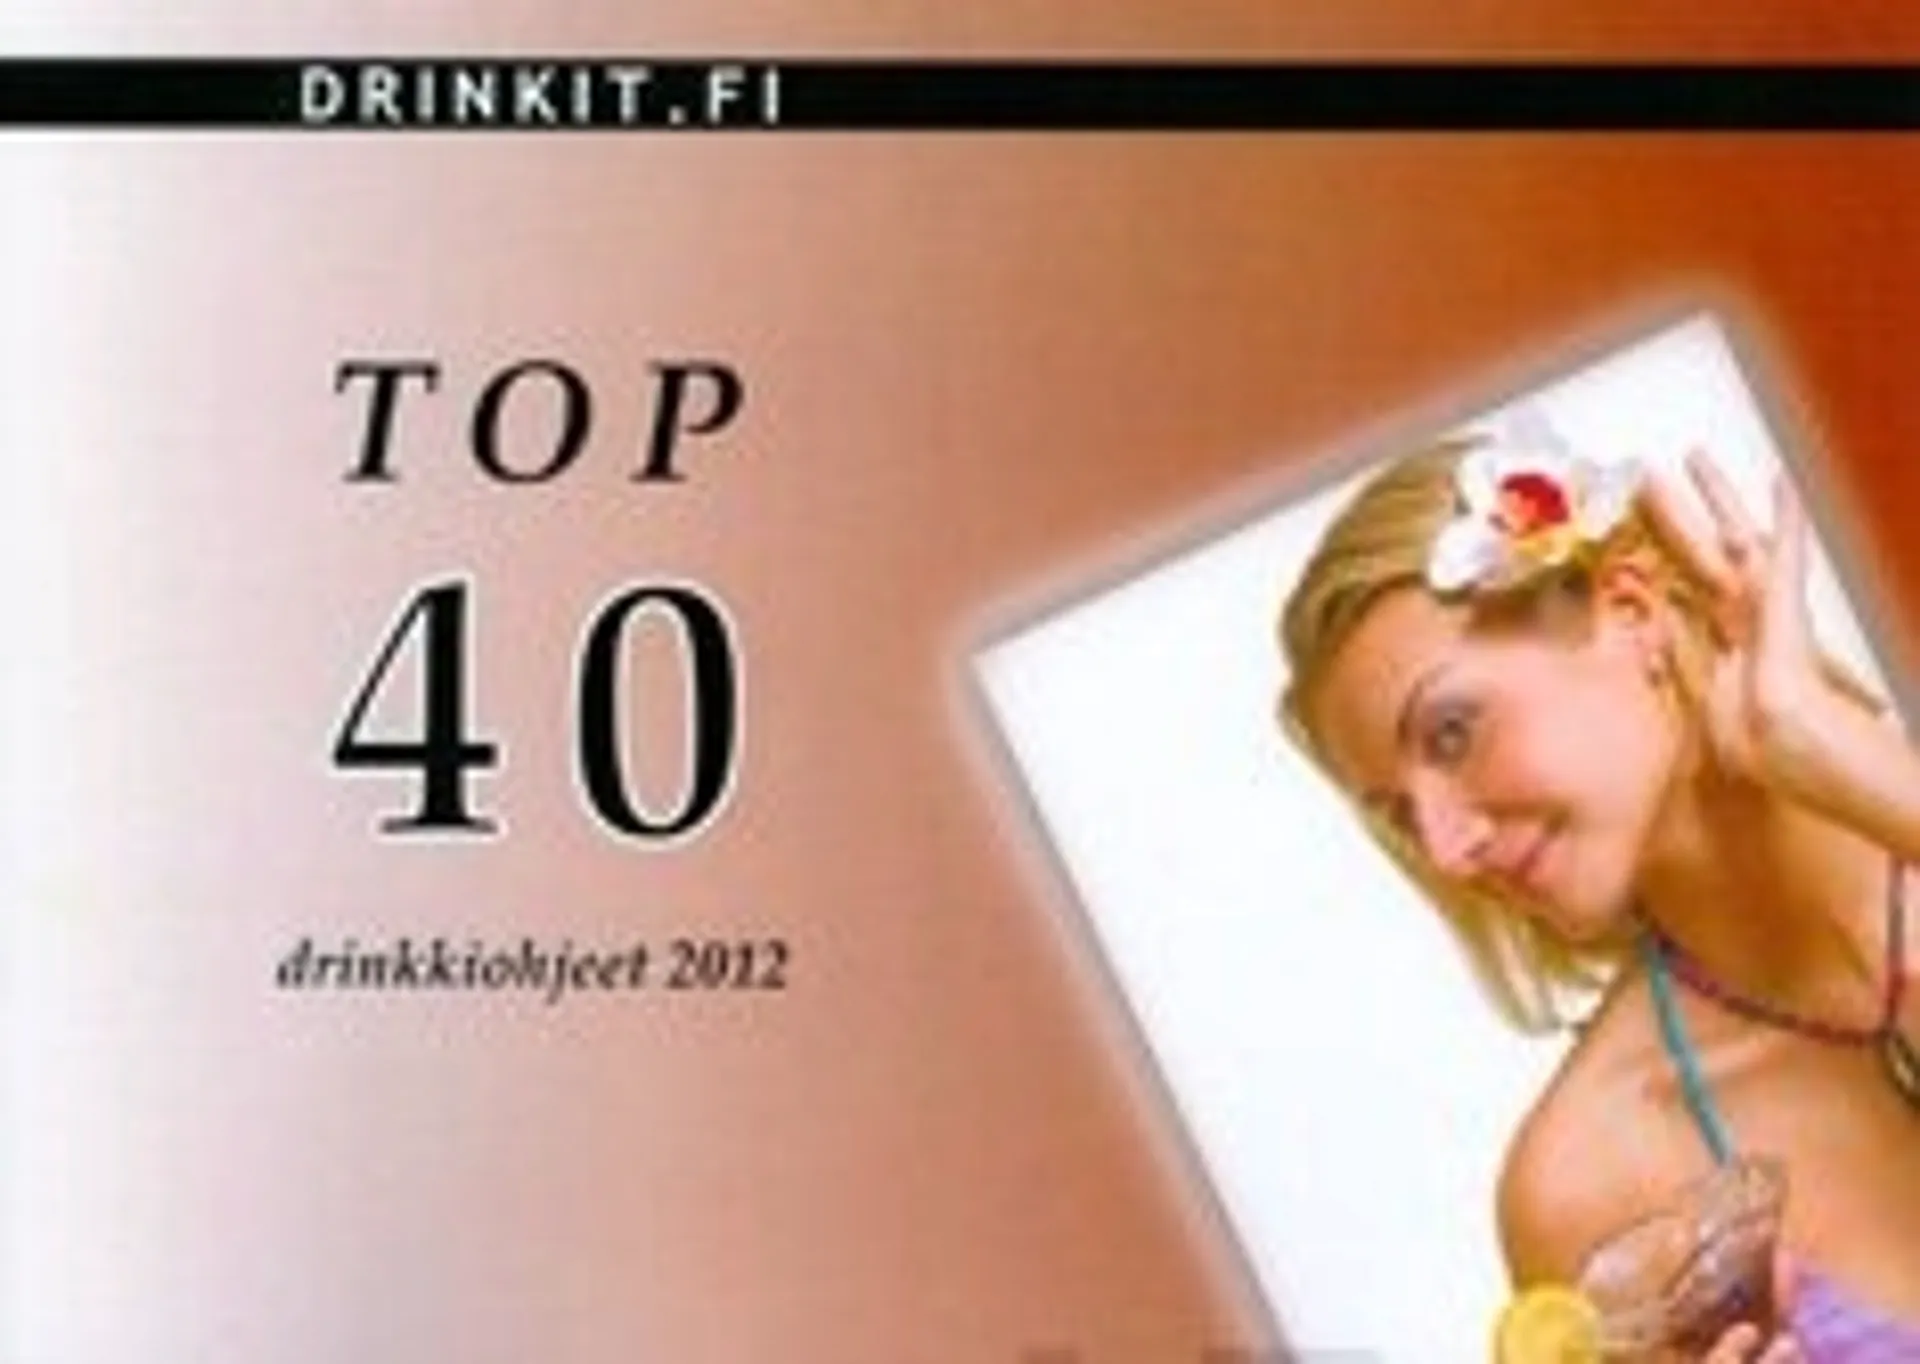 TOP 40 drinkkiohjeet 2012